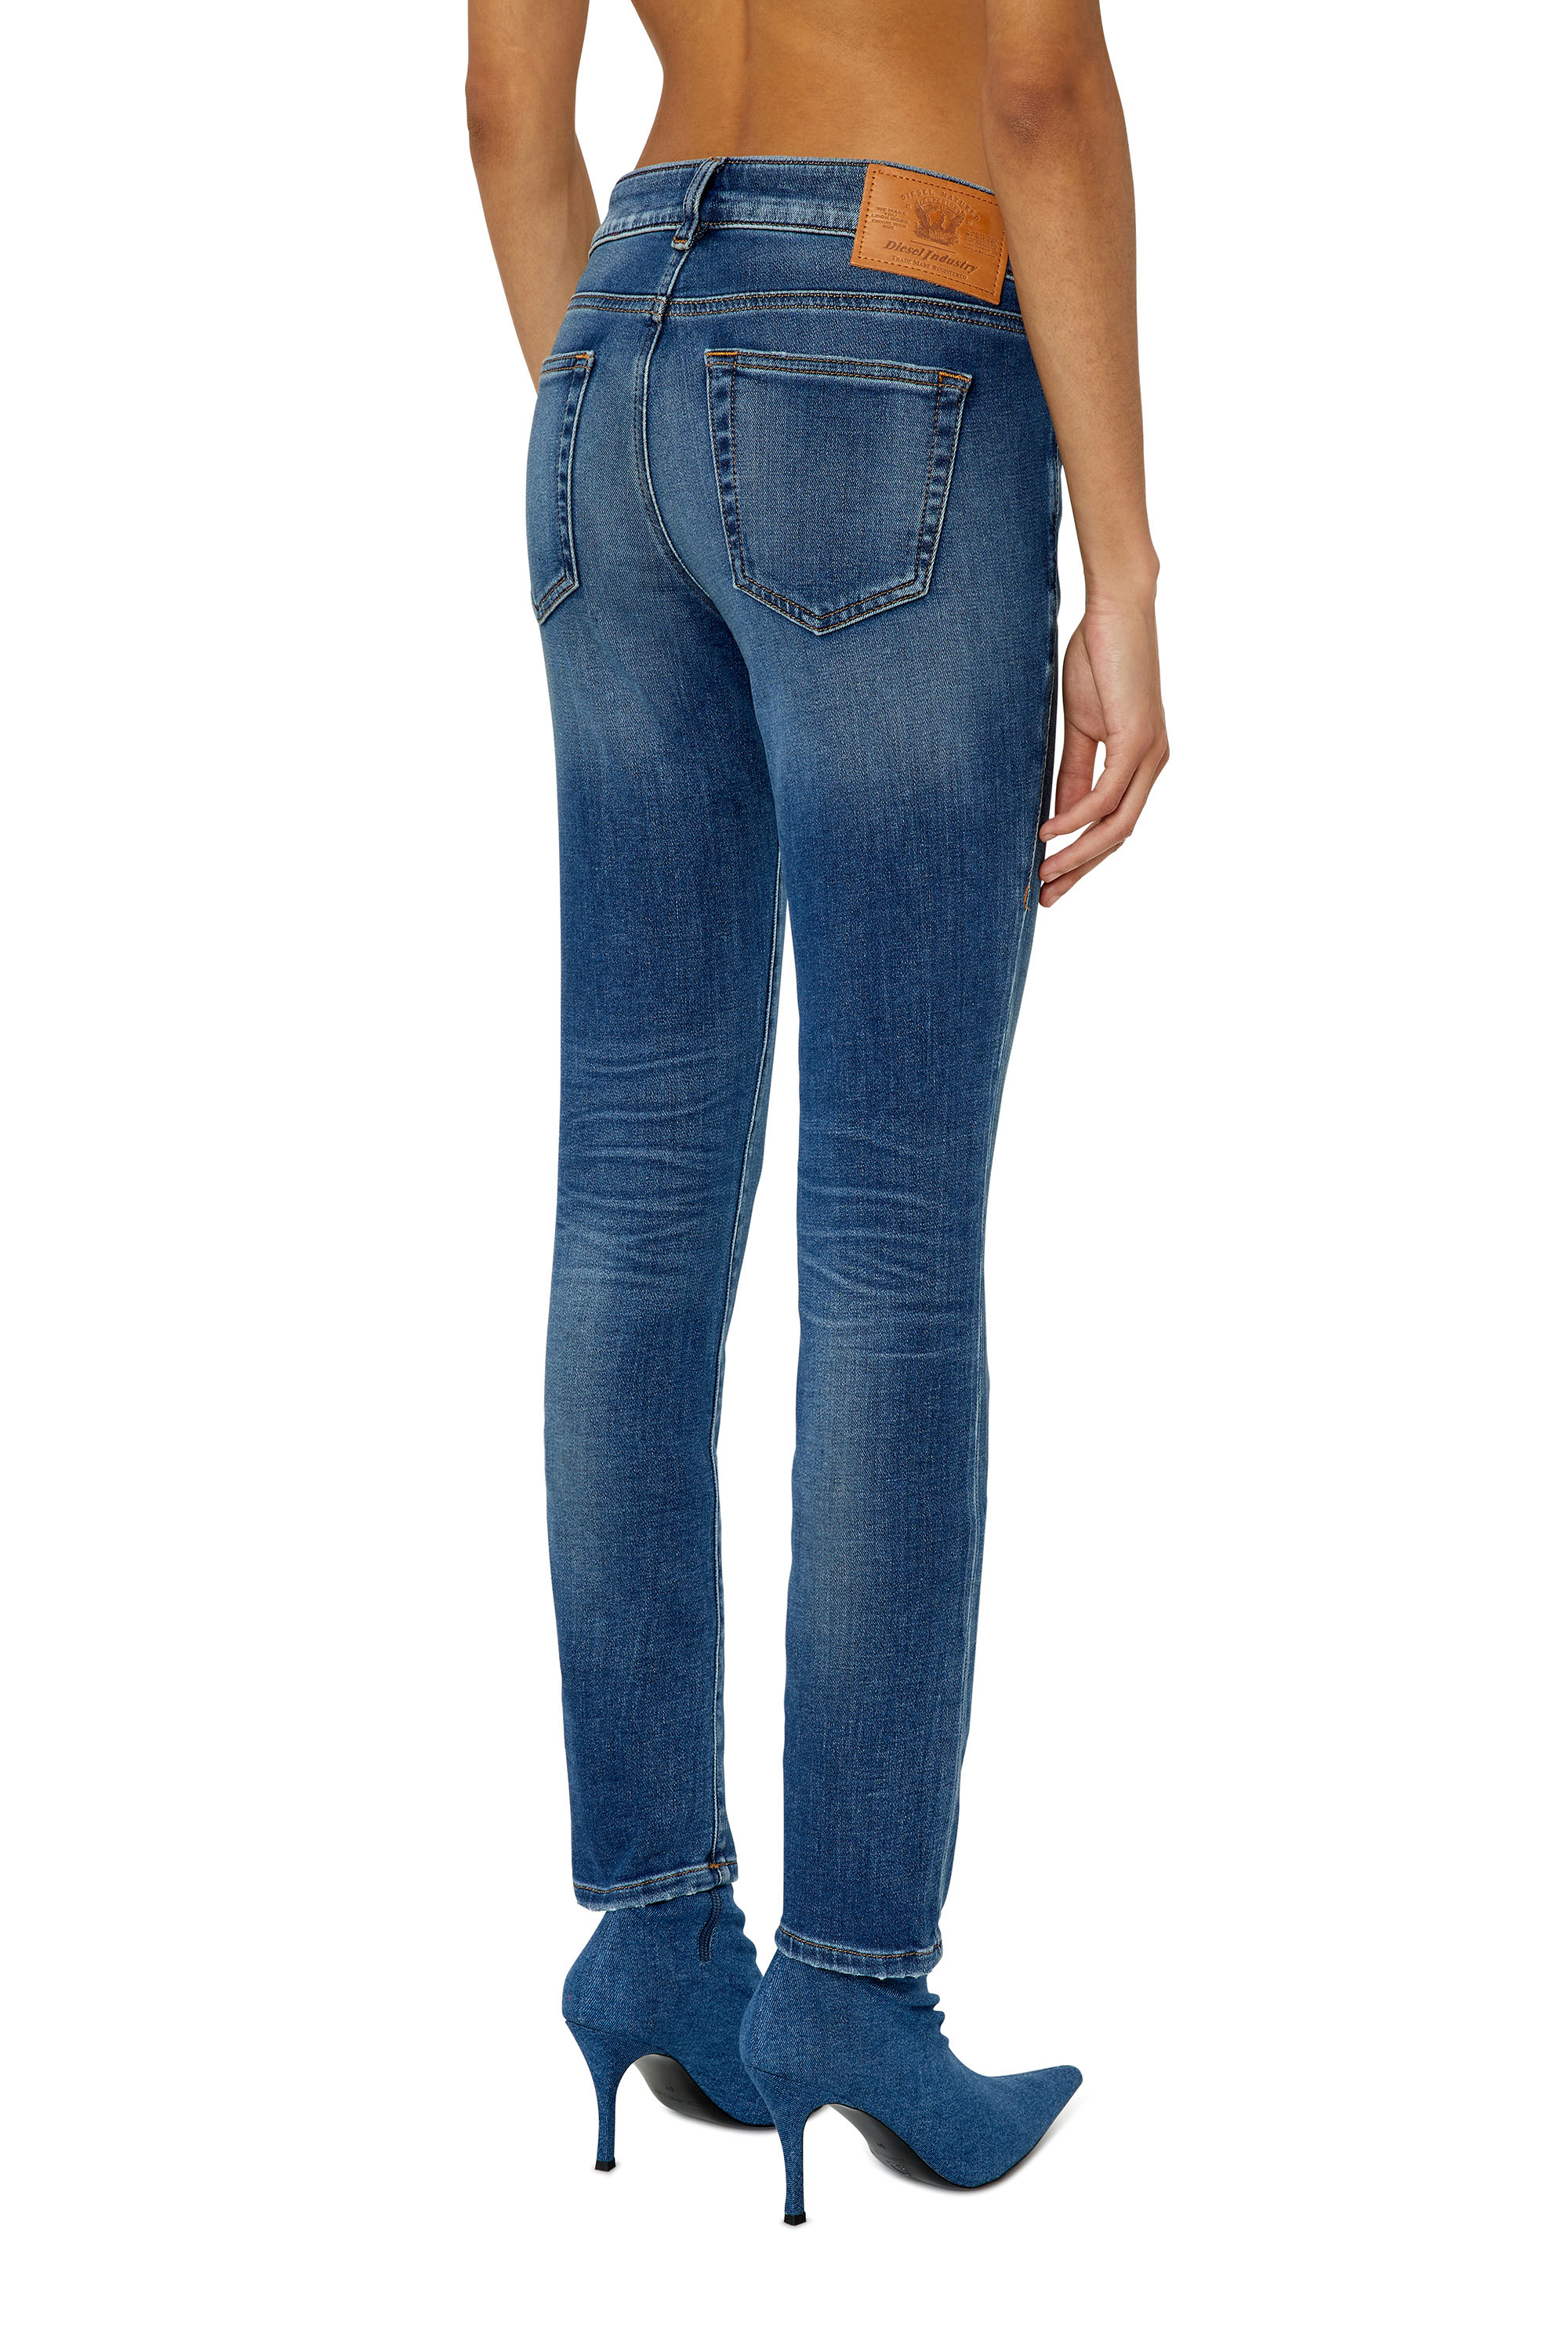 Integreren Omleiding racket Women's JoggJeans®: High-waisted, baggy, tapered jeans | Diesel®